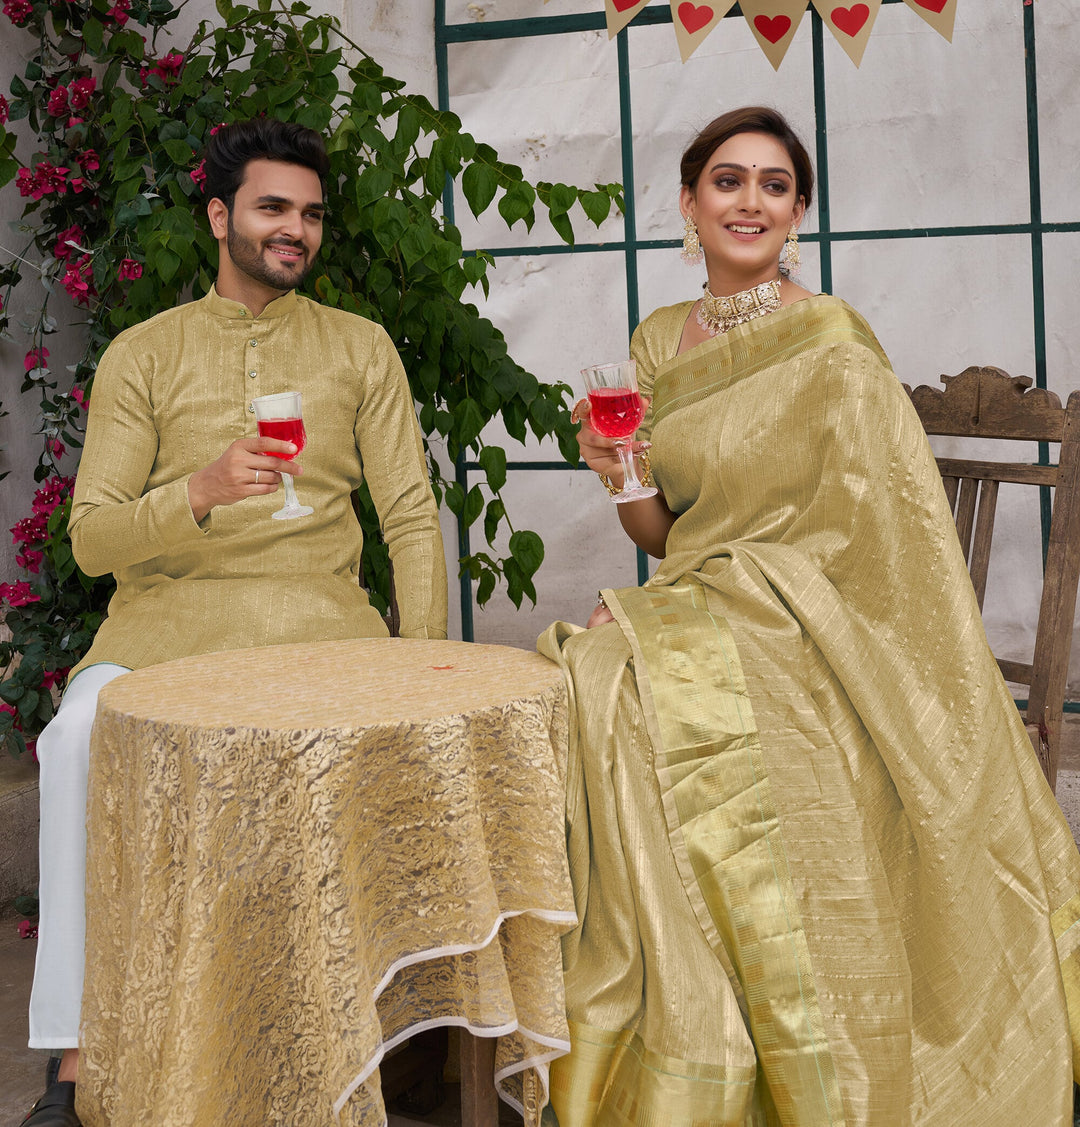 Bansri Gold Lemon Yellow Couple Set Saree and Kurta